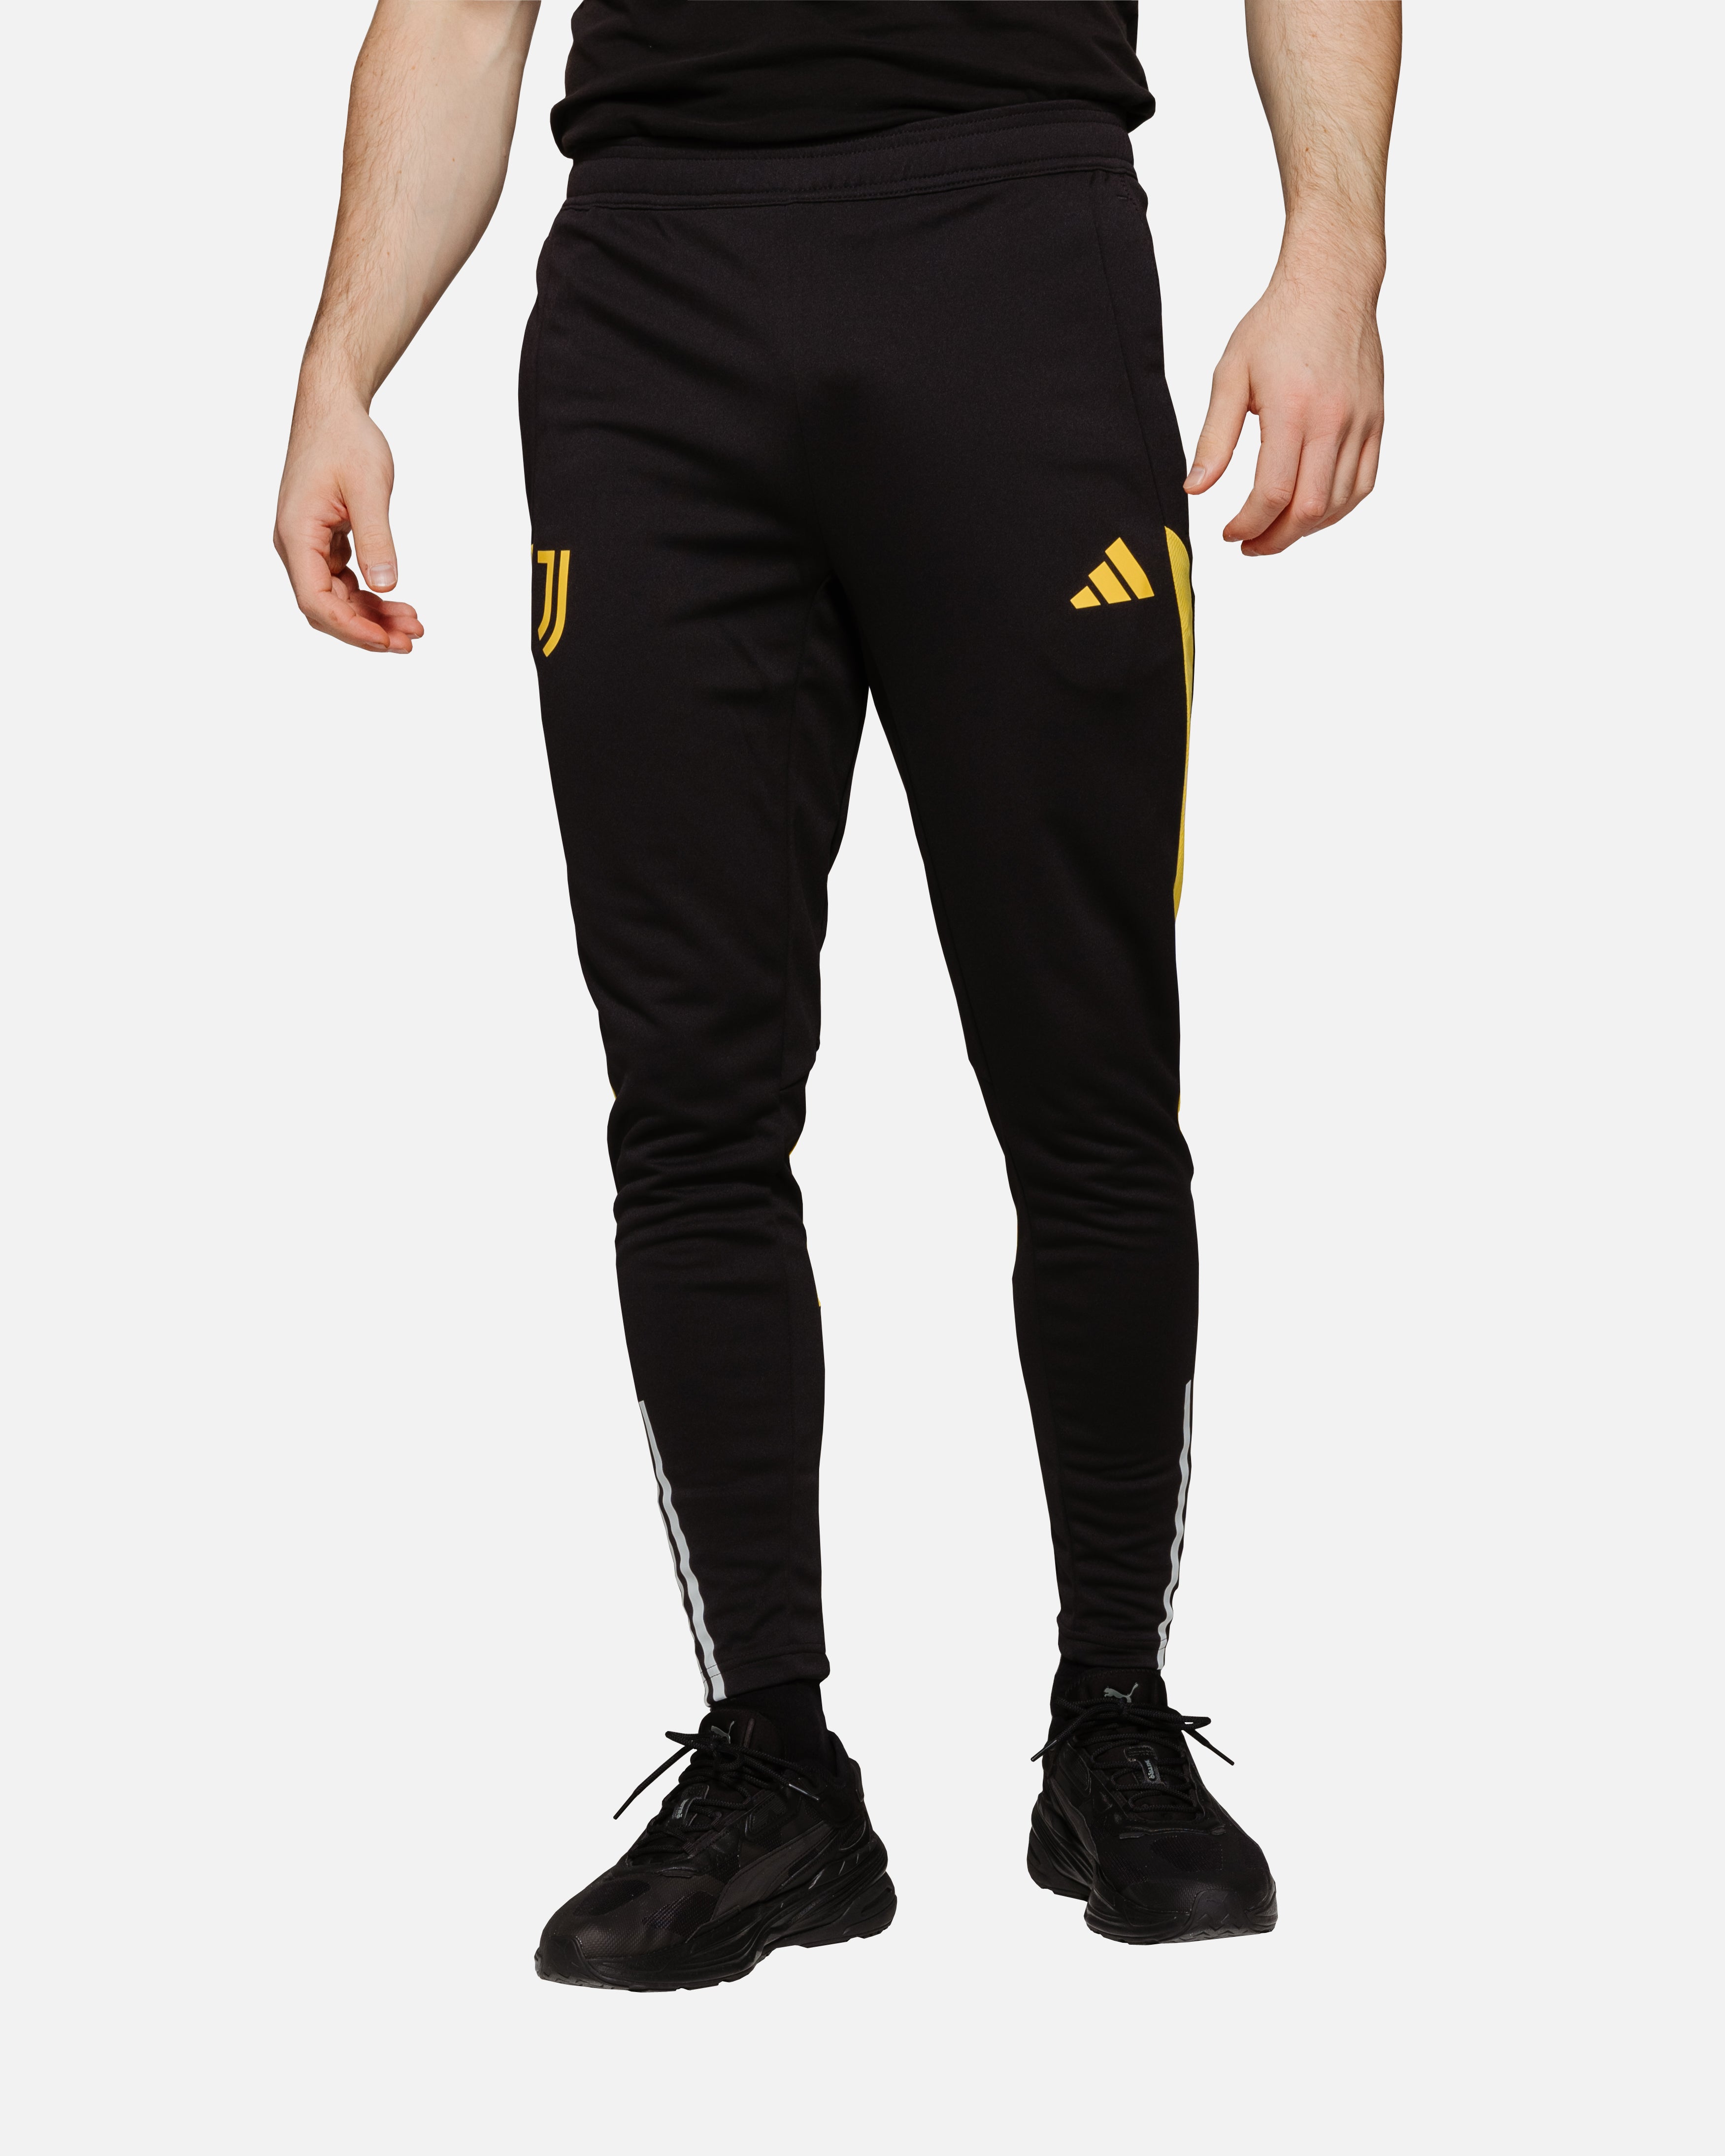 Juventus 2023/2024 training pants - Black/Yellow/White